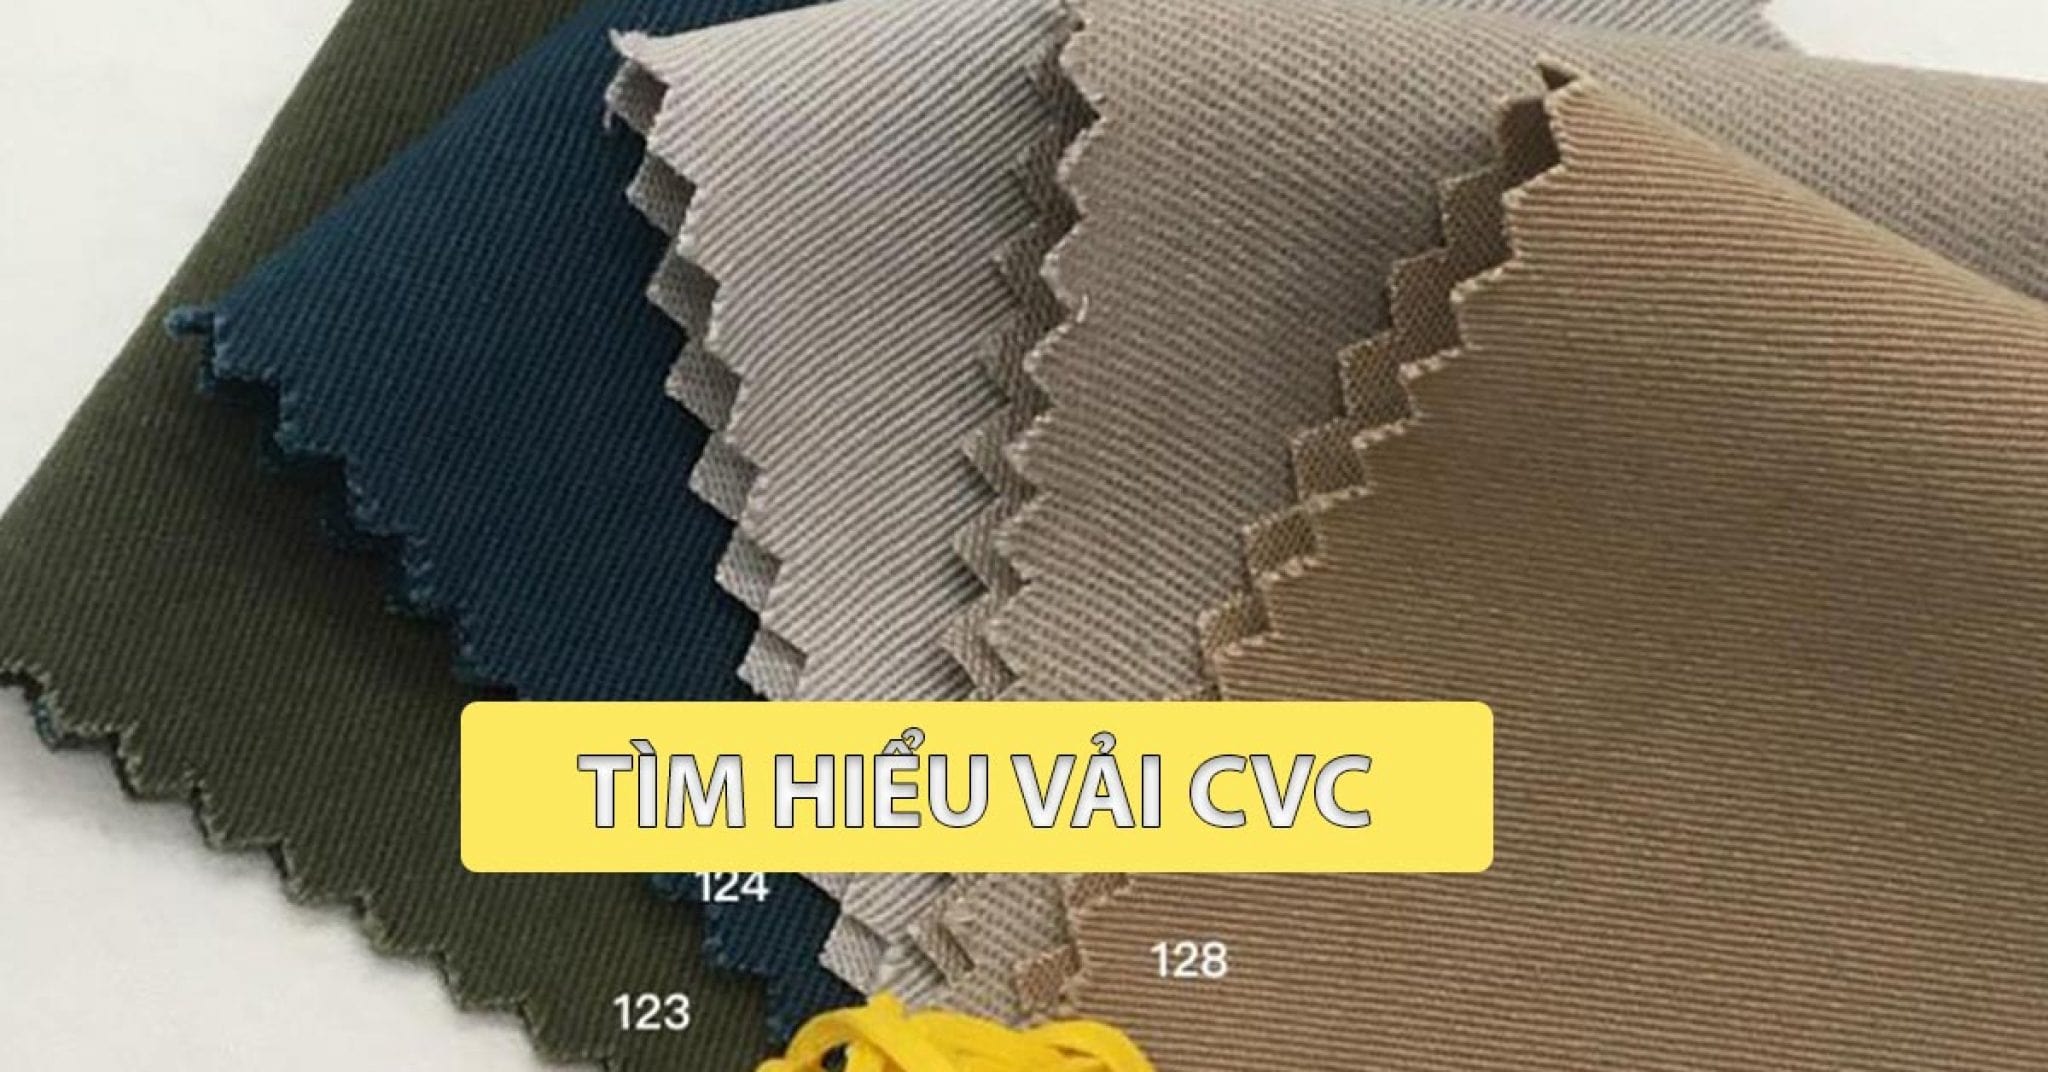 Vải CVC là gì